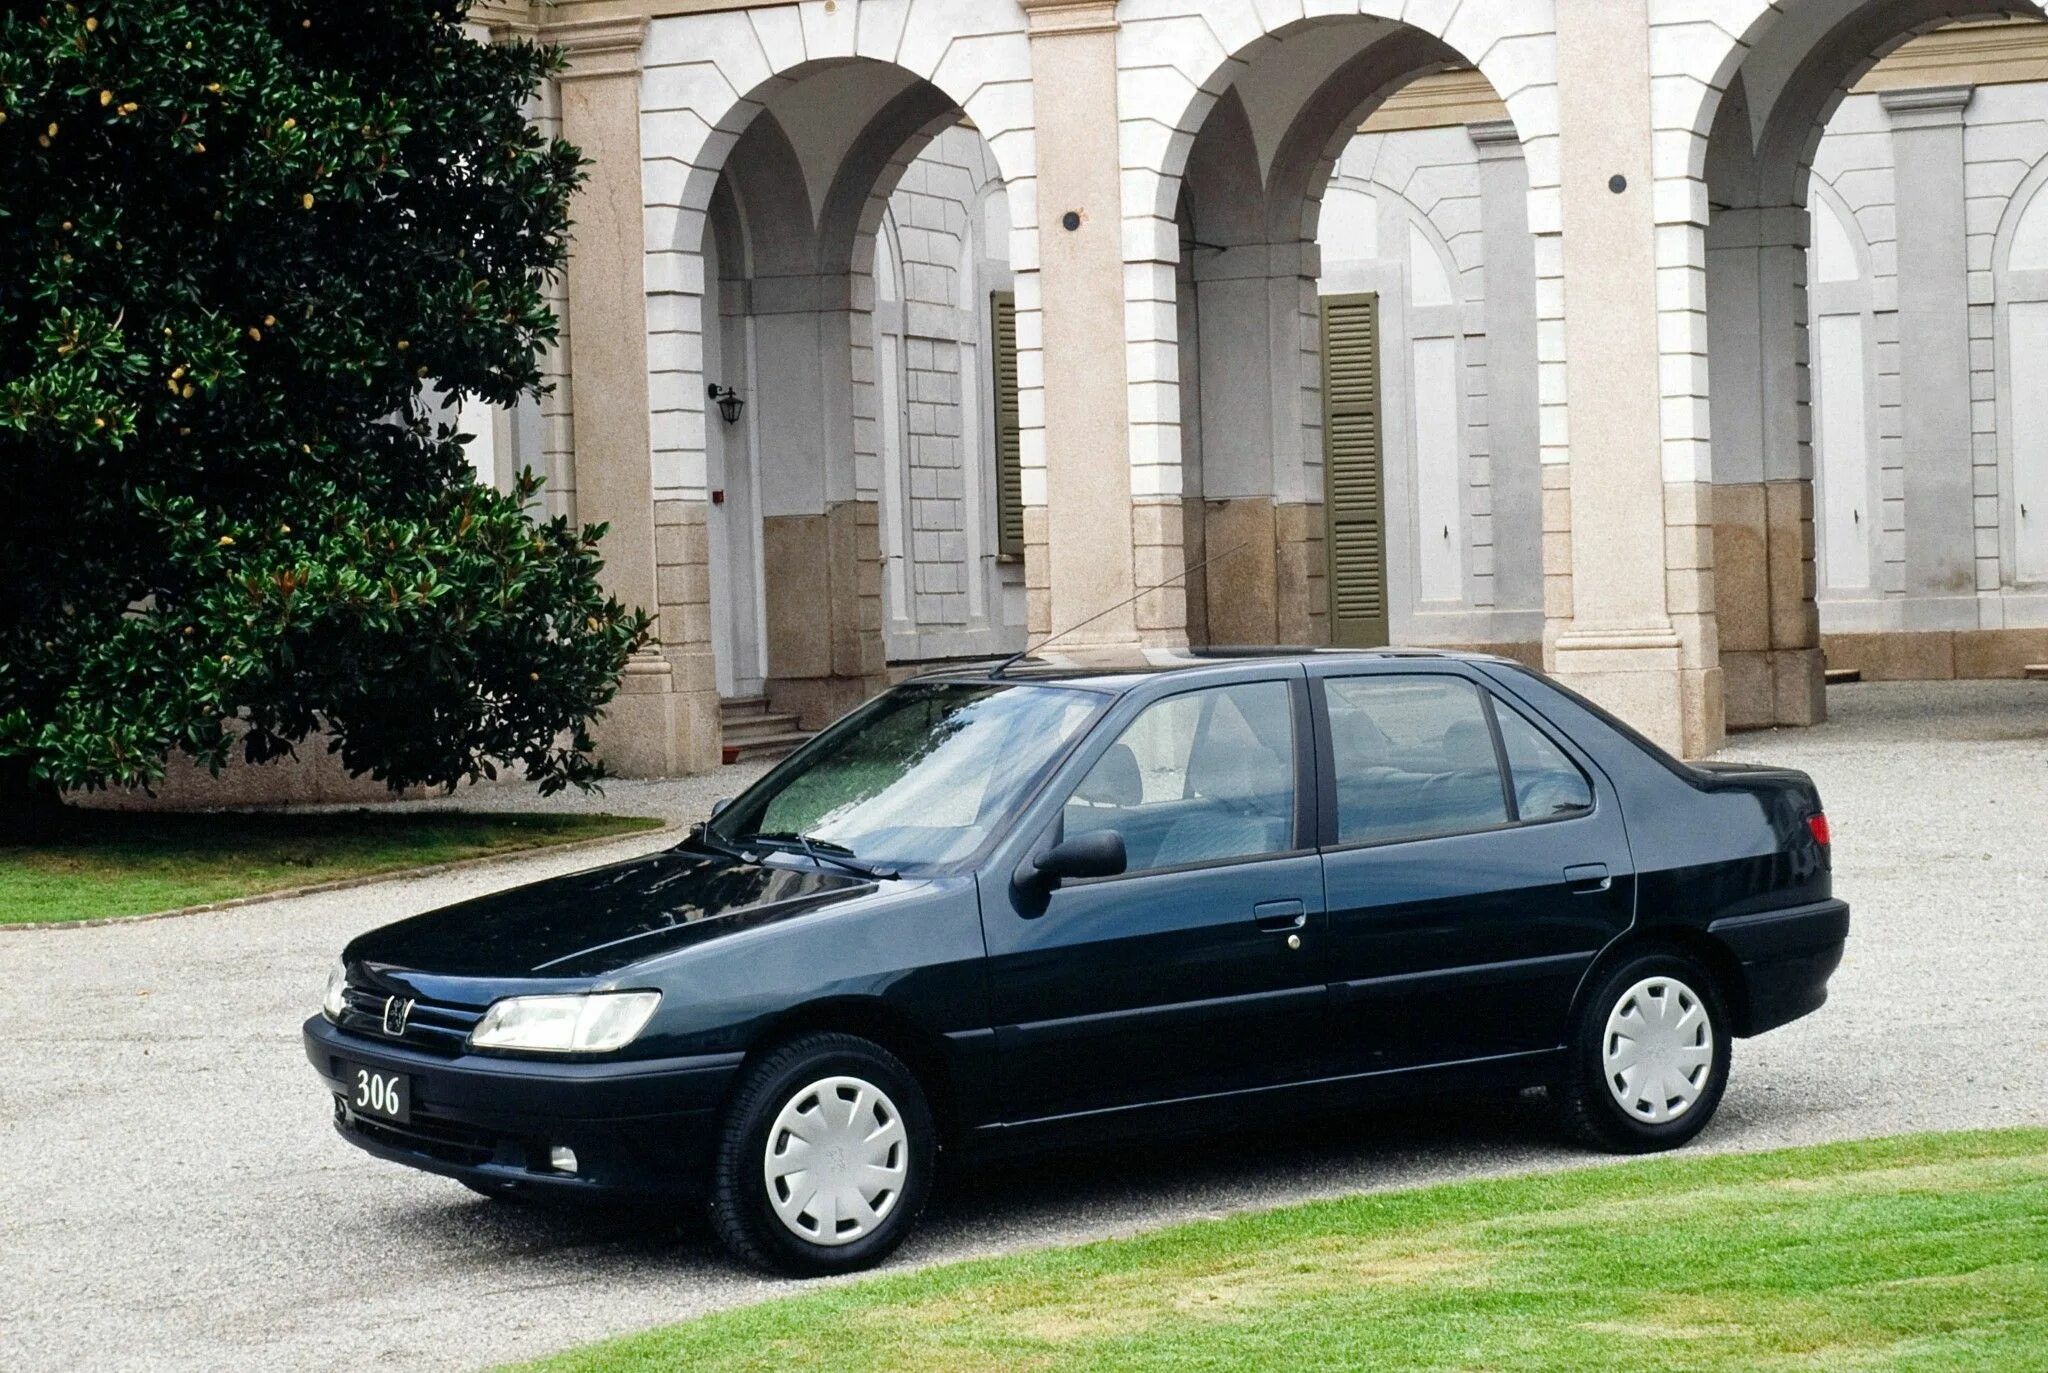 Peugeot 306 седан. Peugeot 306 1995 седан. Пежо 306 седан 1995. Пежо 306 седан фото.